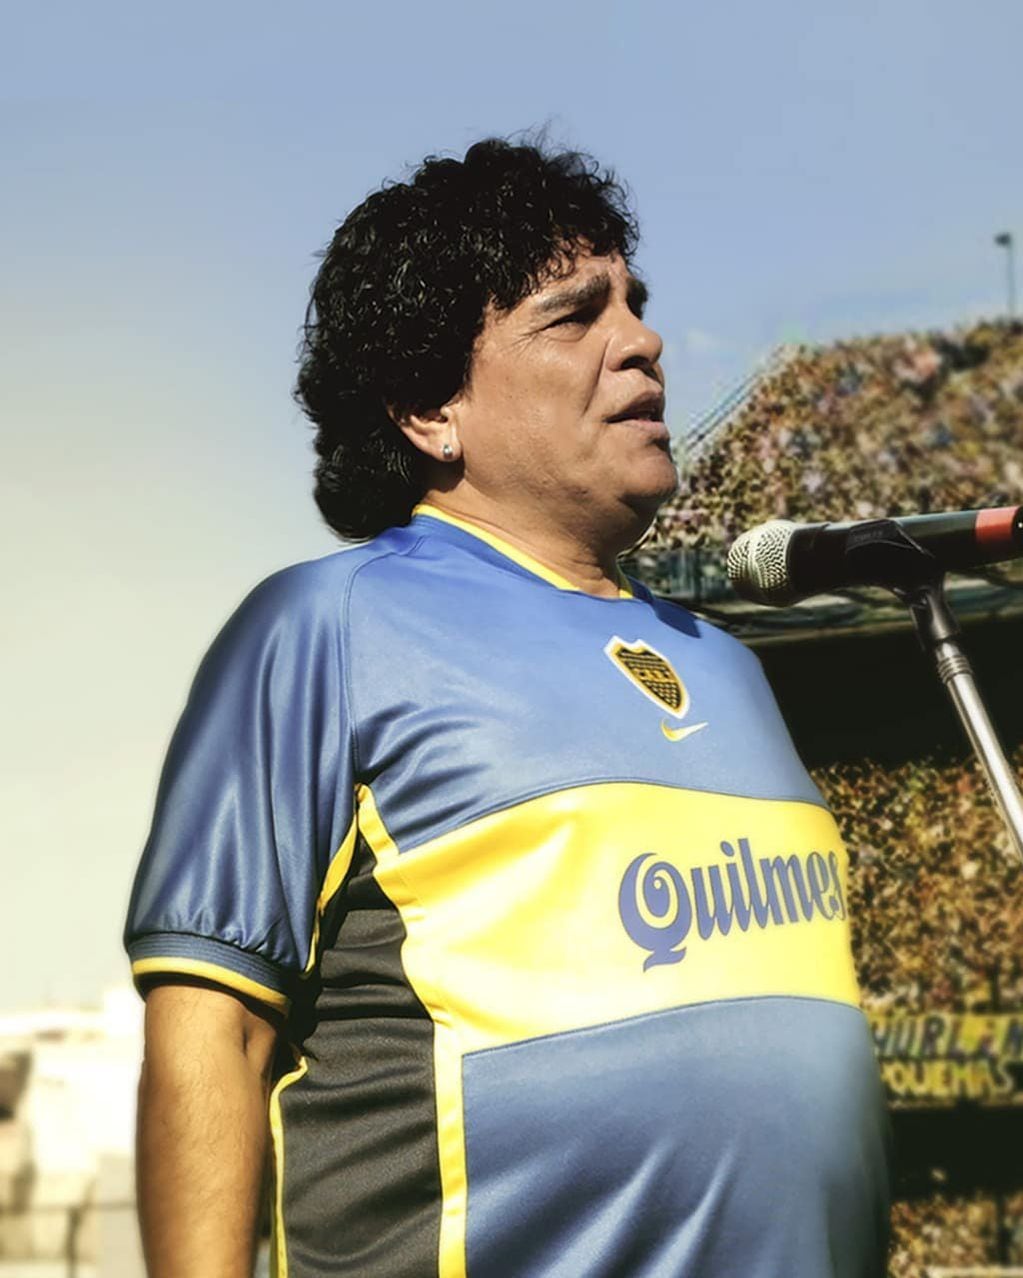 Juan Palomino en la piel de Maradona durante su partido homenaje, un extracto de "Maradona: Sueño Bendito", la serie de Amazon Prime. Foto: Instagram @maradonaprimevideo